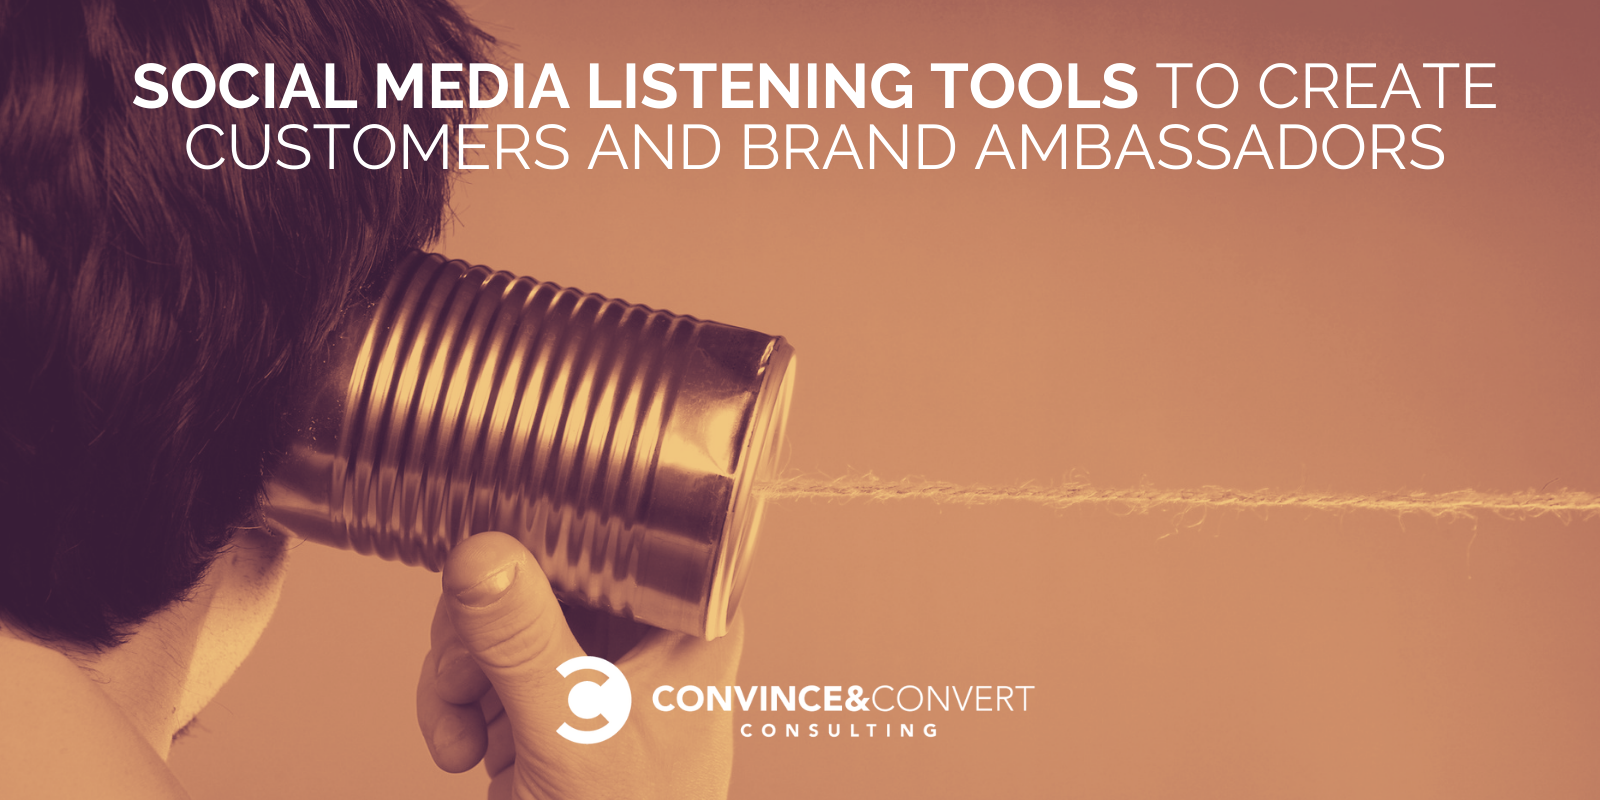 I migliori strumenti di ascolto sui social media per trasformare i follower in clienti e ambasciatori del marchio